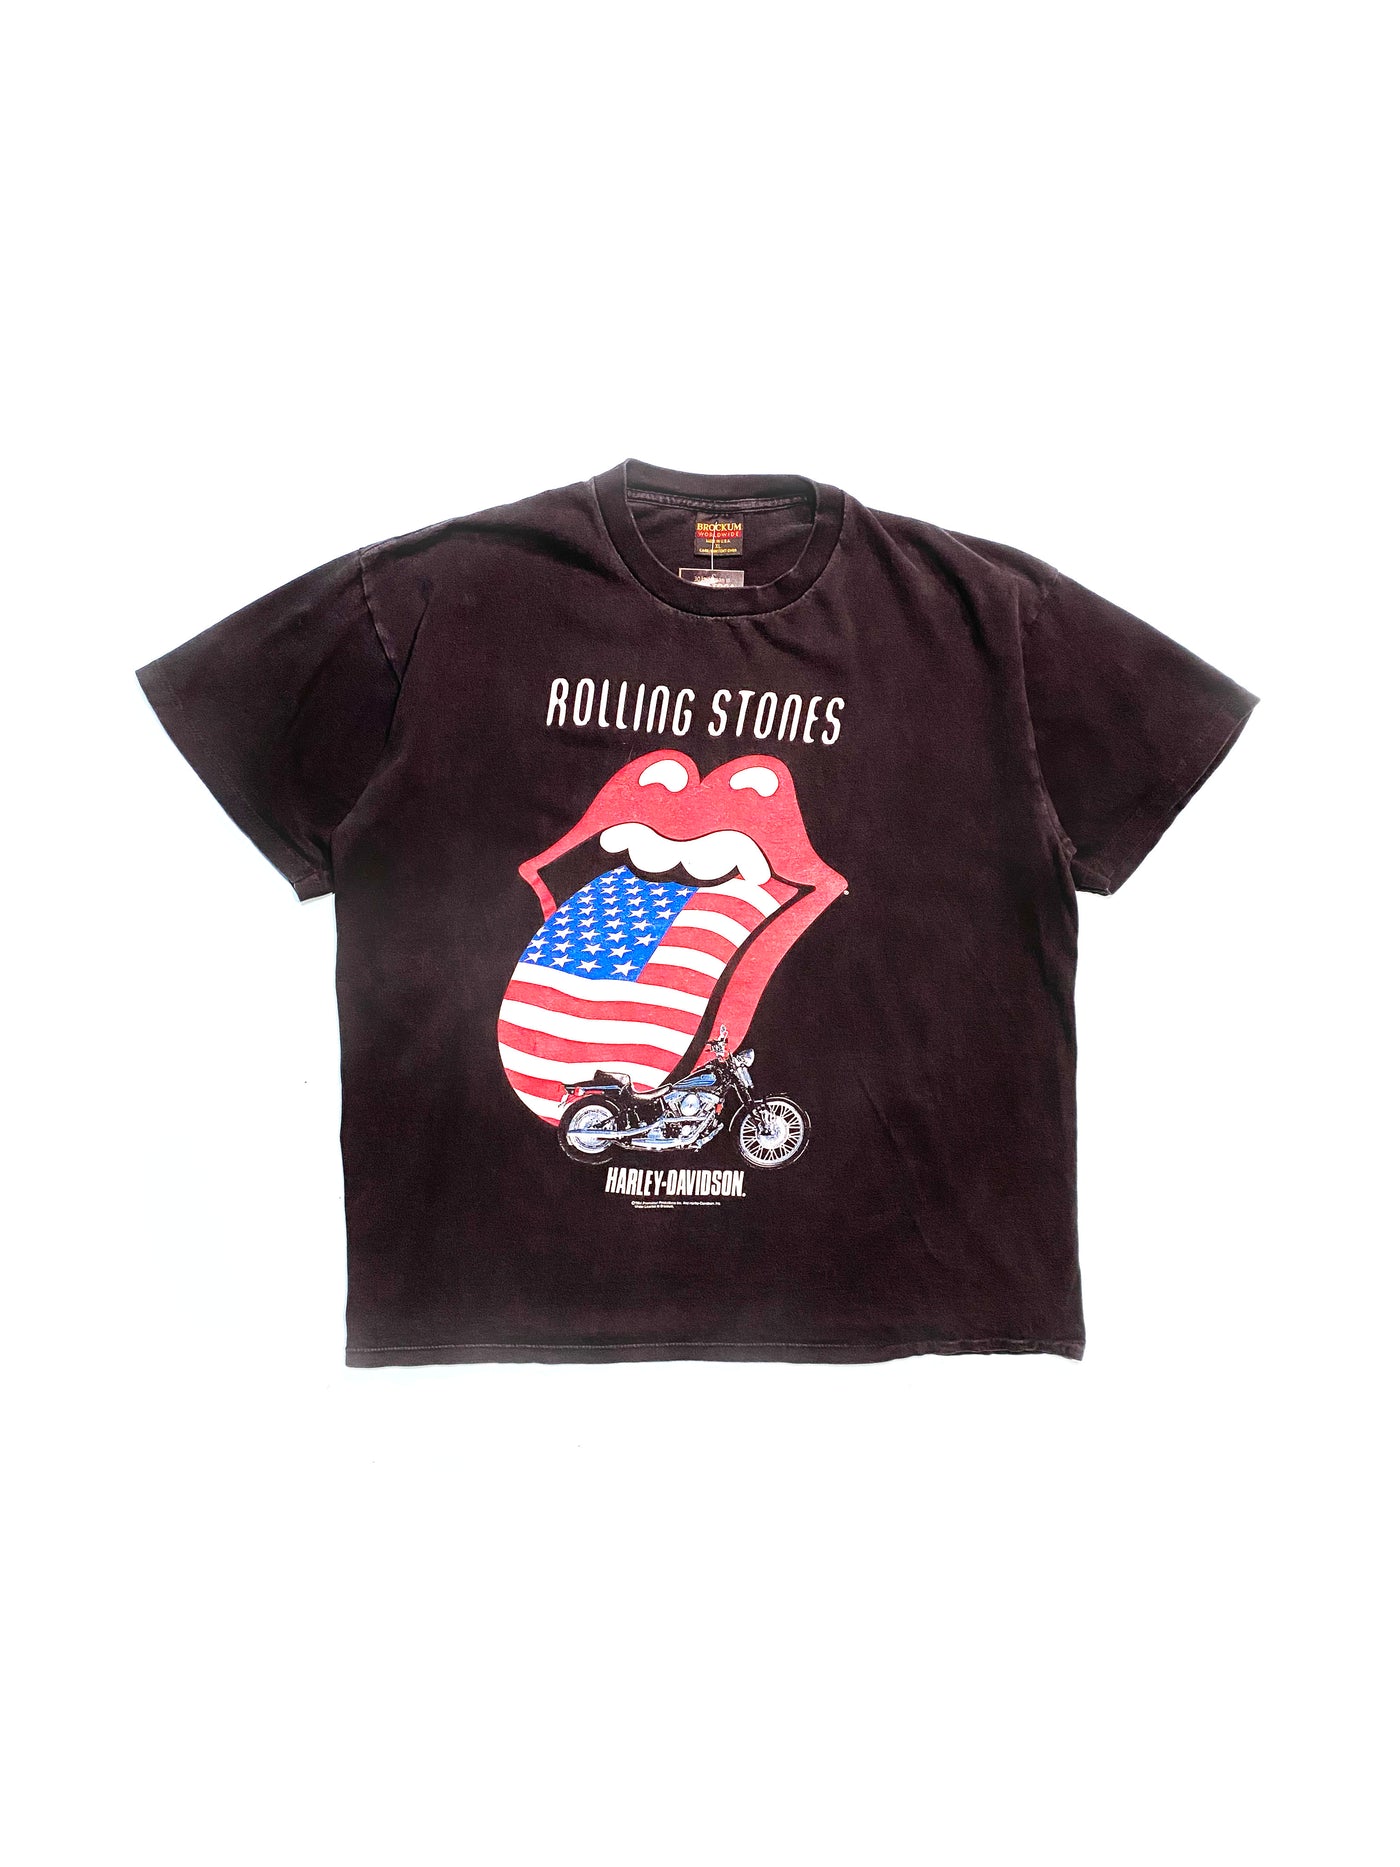 Vintage 1994 Rolling Stones Harley Davidson Collab T-Shirt